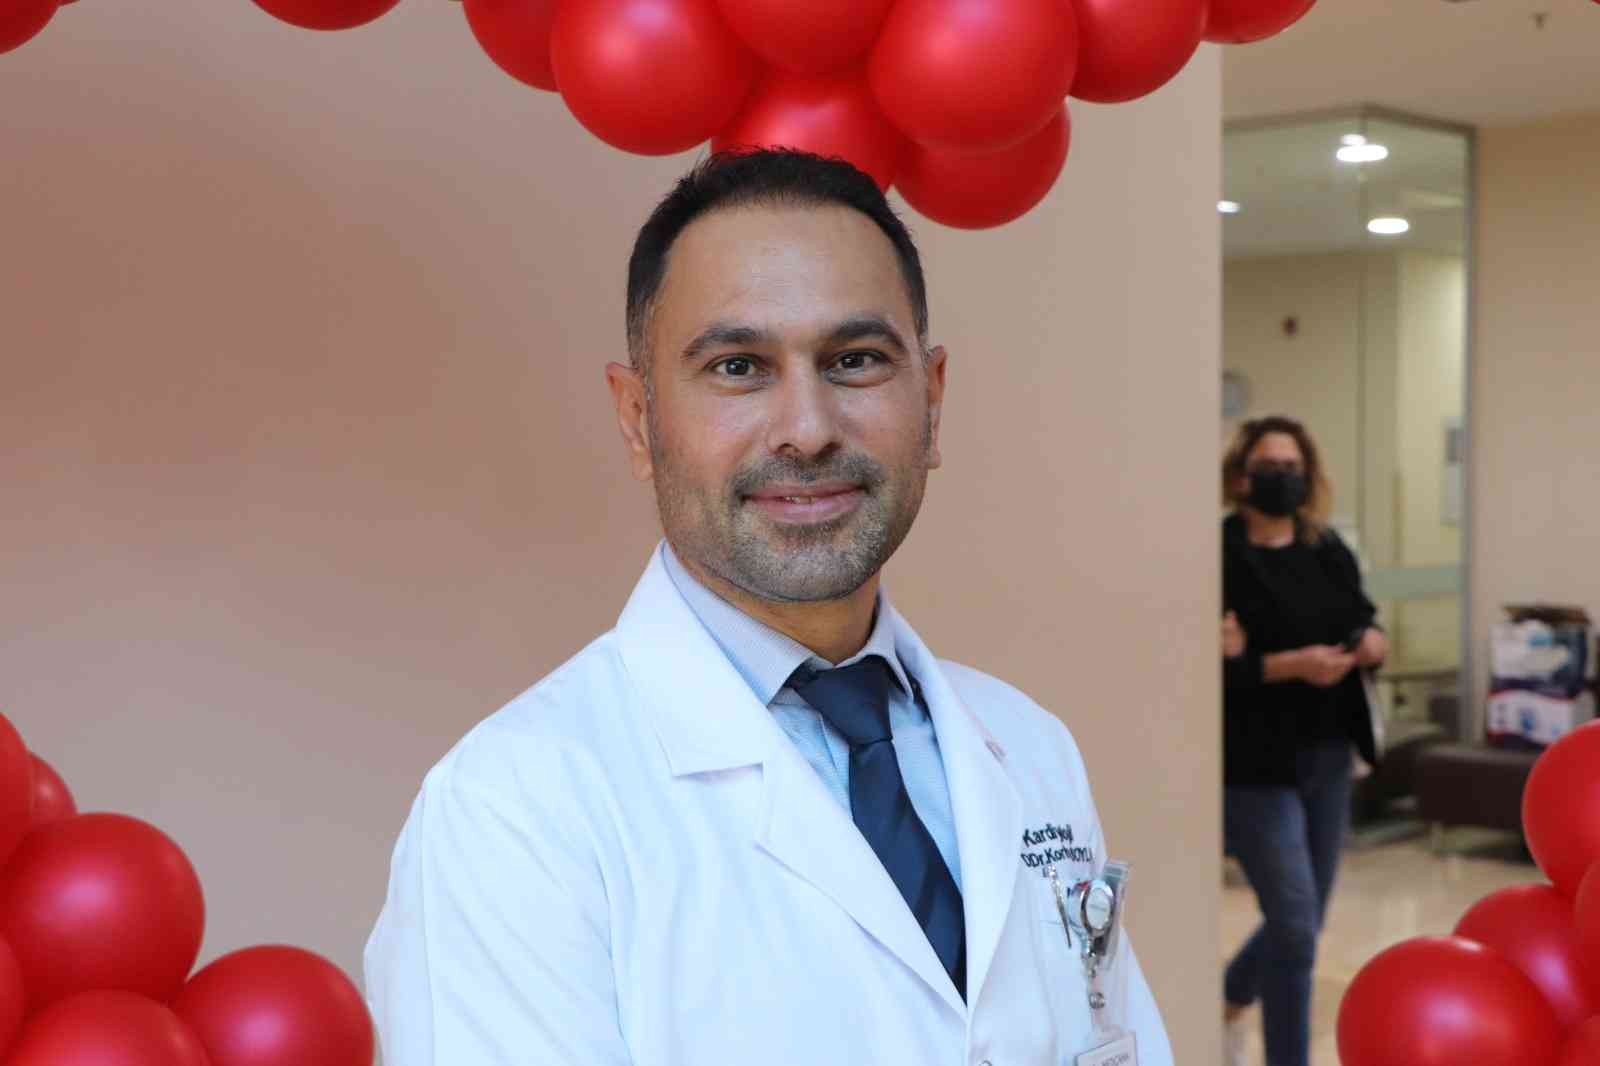 Doç. Dr. Soylu: Kalp hastalarının korona aşısı vurulmasında bir sakınca yok #samsun